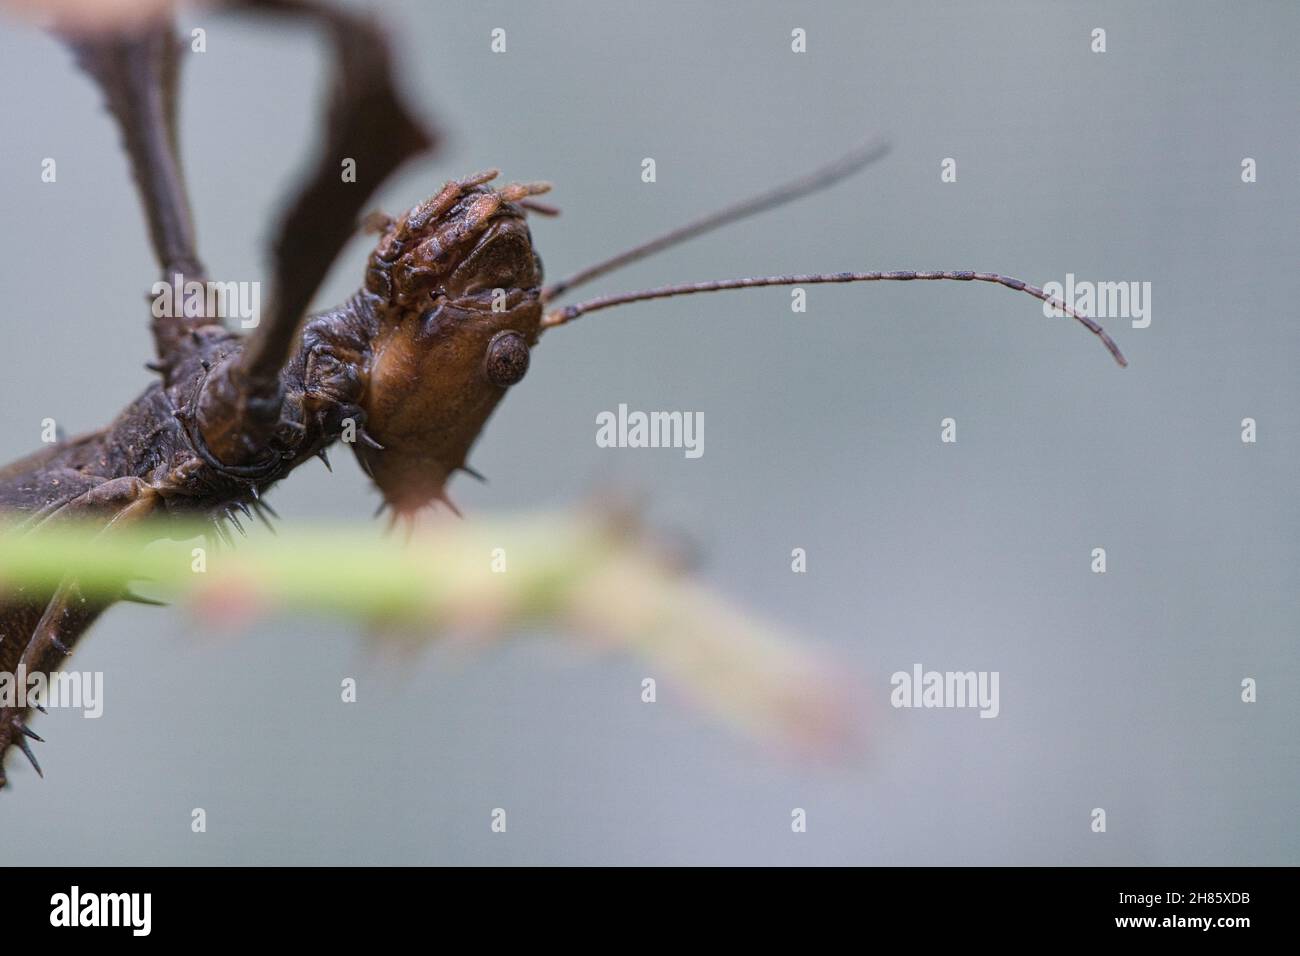 Kopf einer Gottesanbeterin, lauert auf einem Ast. Interessante Insekten, die gut beobachtet werden können. Stockfoto